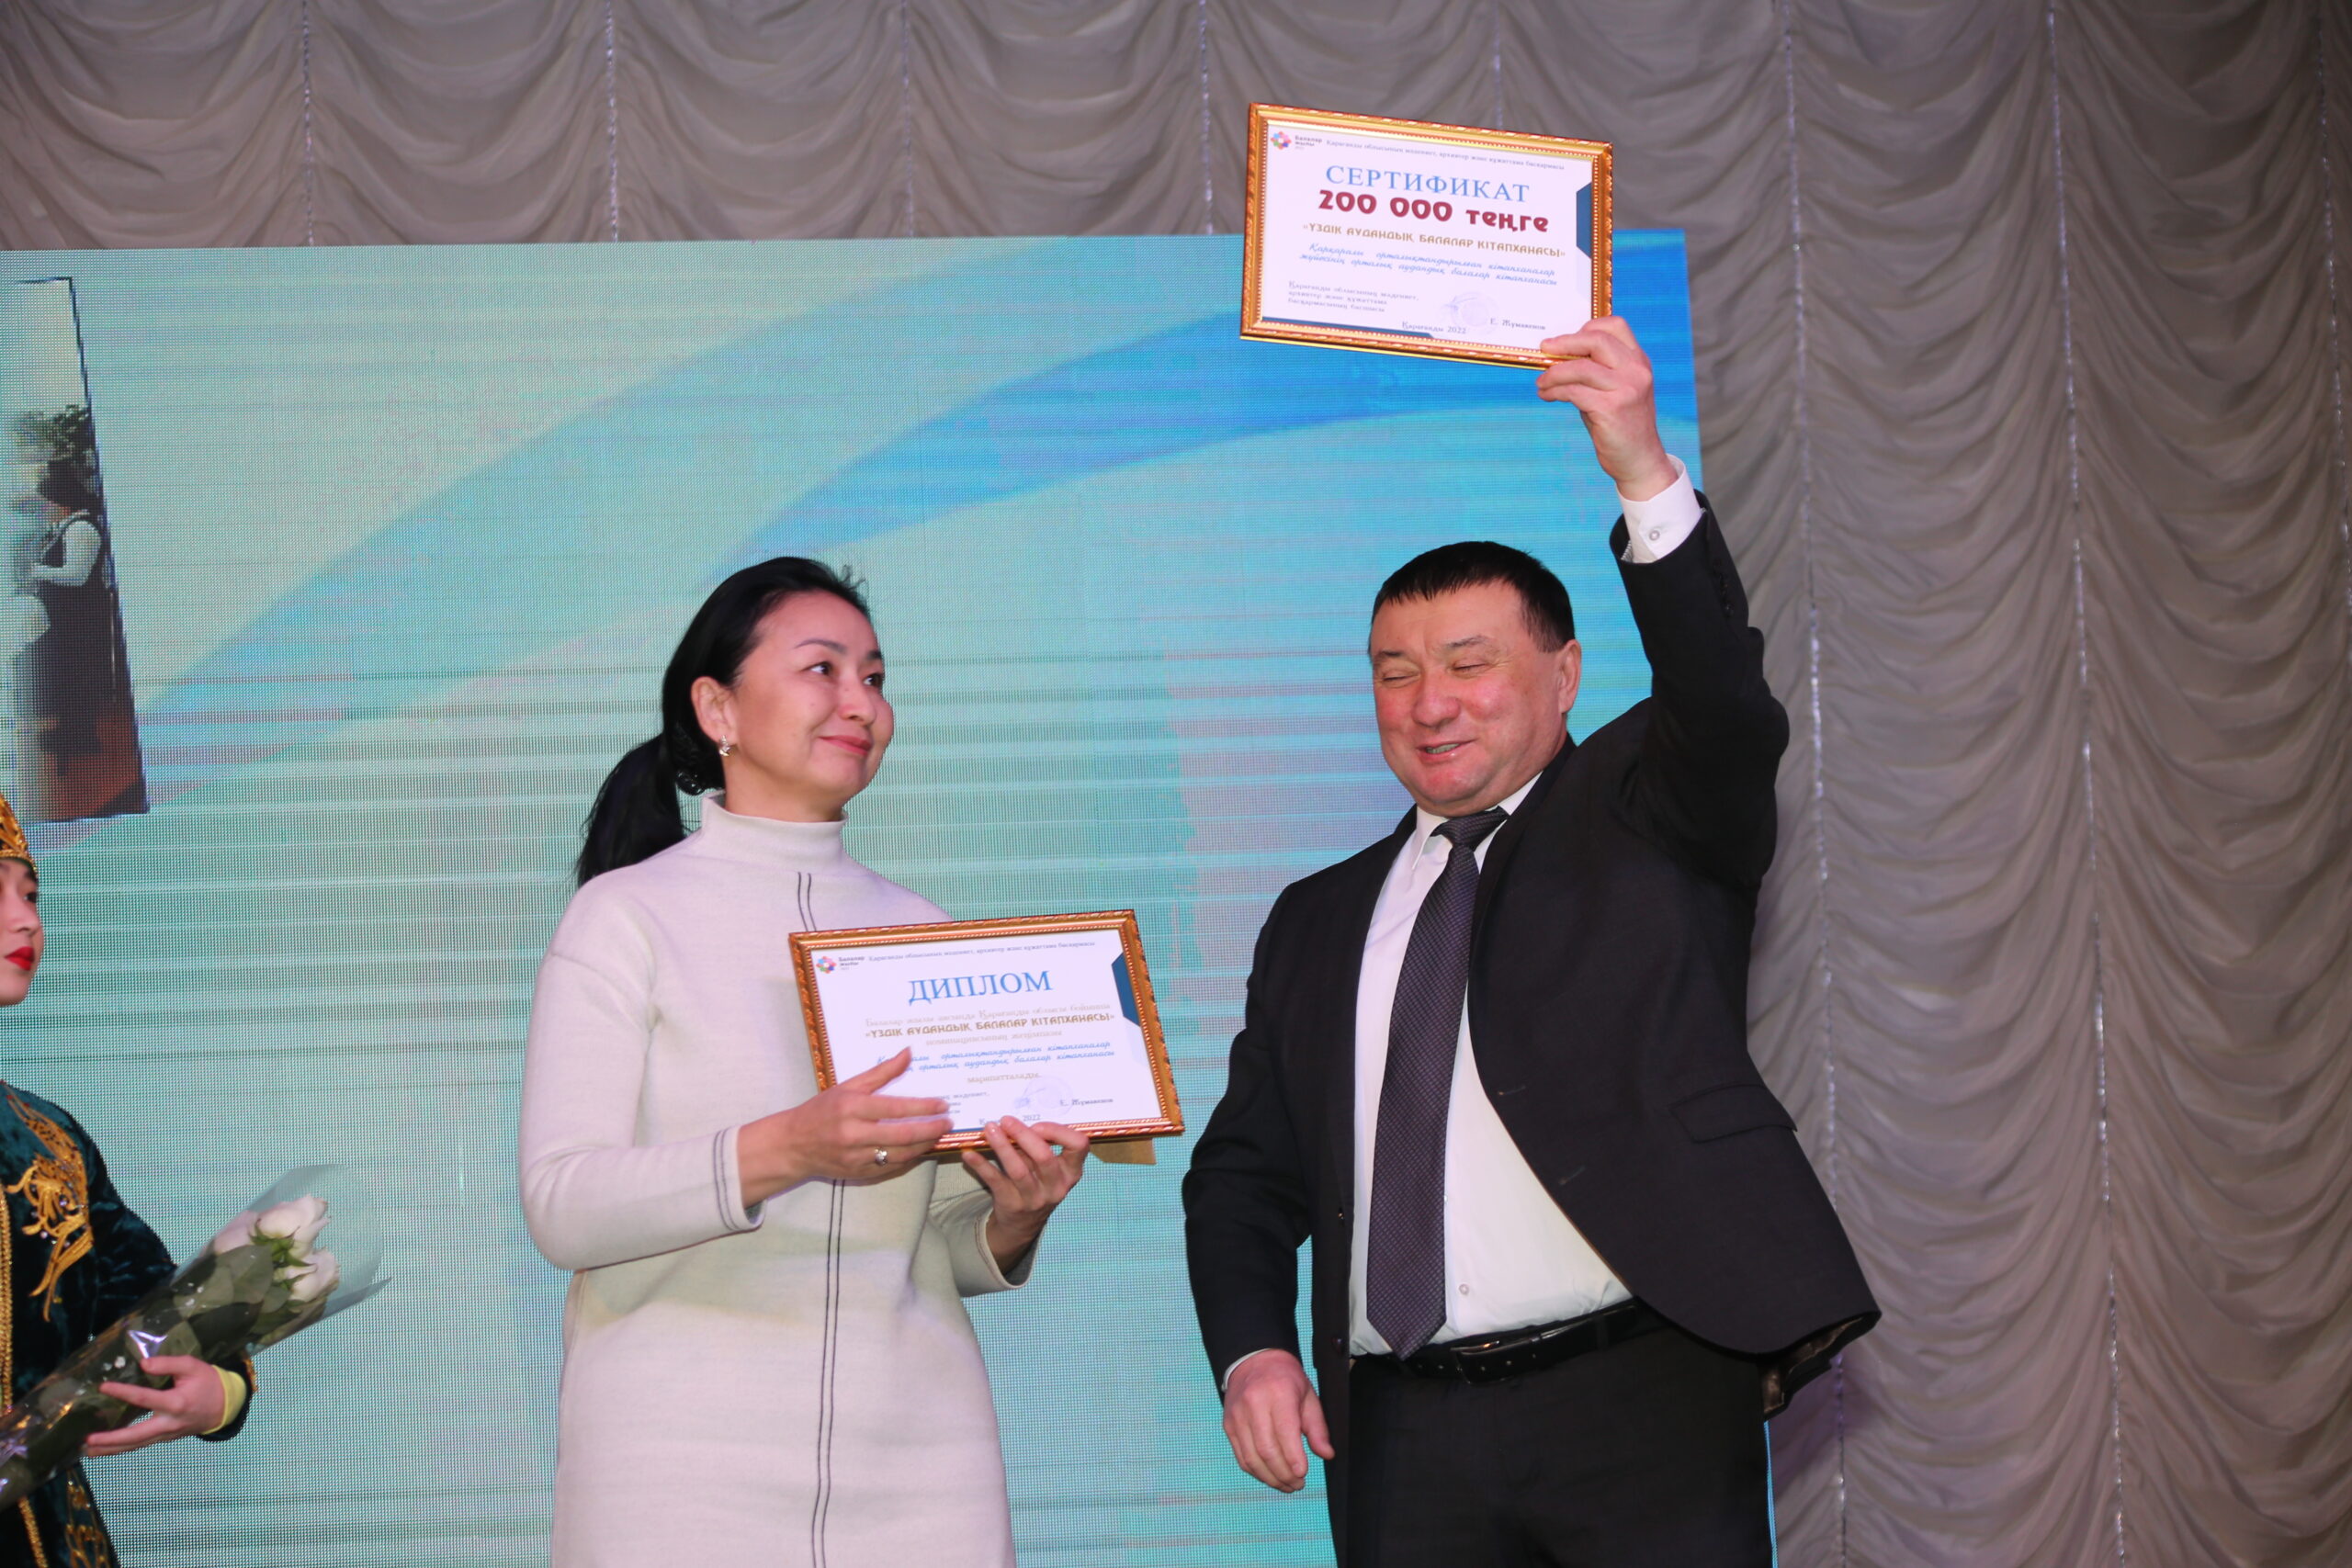  В Карагандинском областном академическом казахском драматическом театре имени С.Сейфуллина состоялась торжественная церемония награждения победителей конкурса среди библиотек региона.